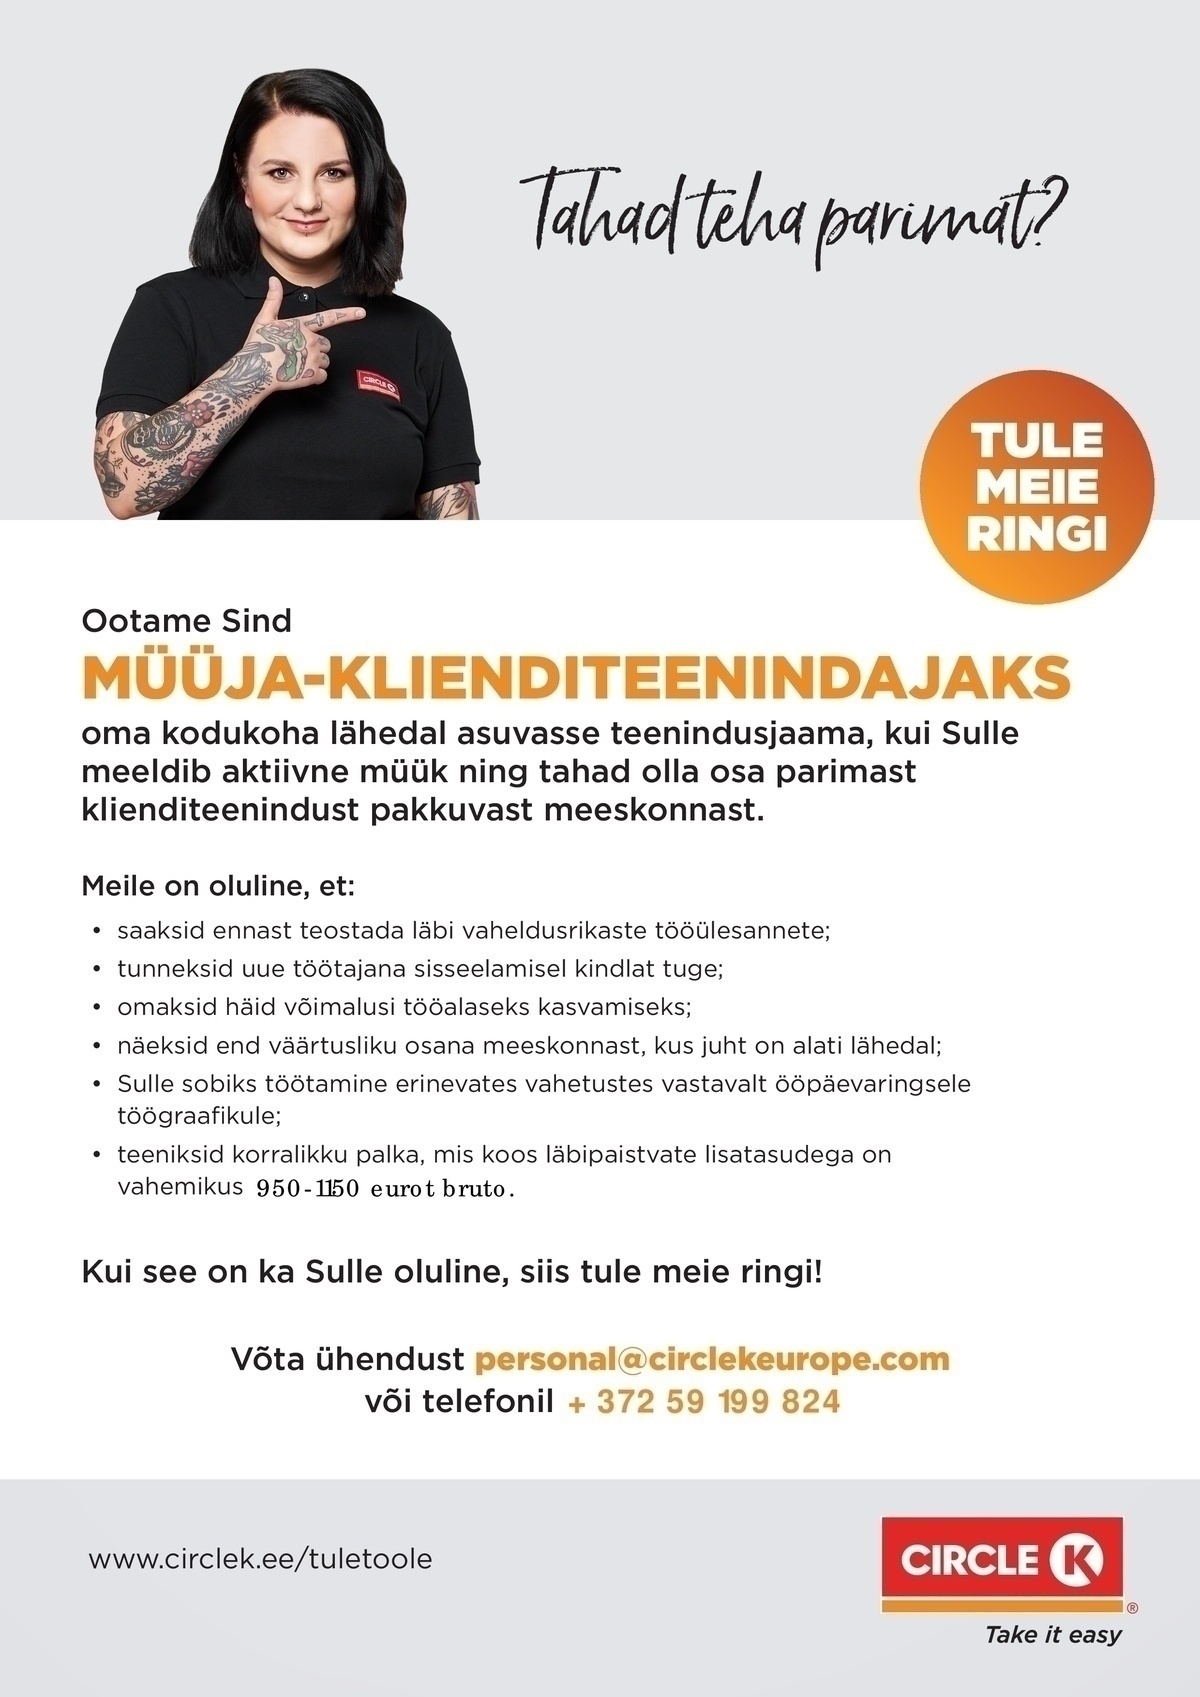 Circle K Eesti AS Müüja-klienditeenindaja Tartu teenindusjaamadesse